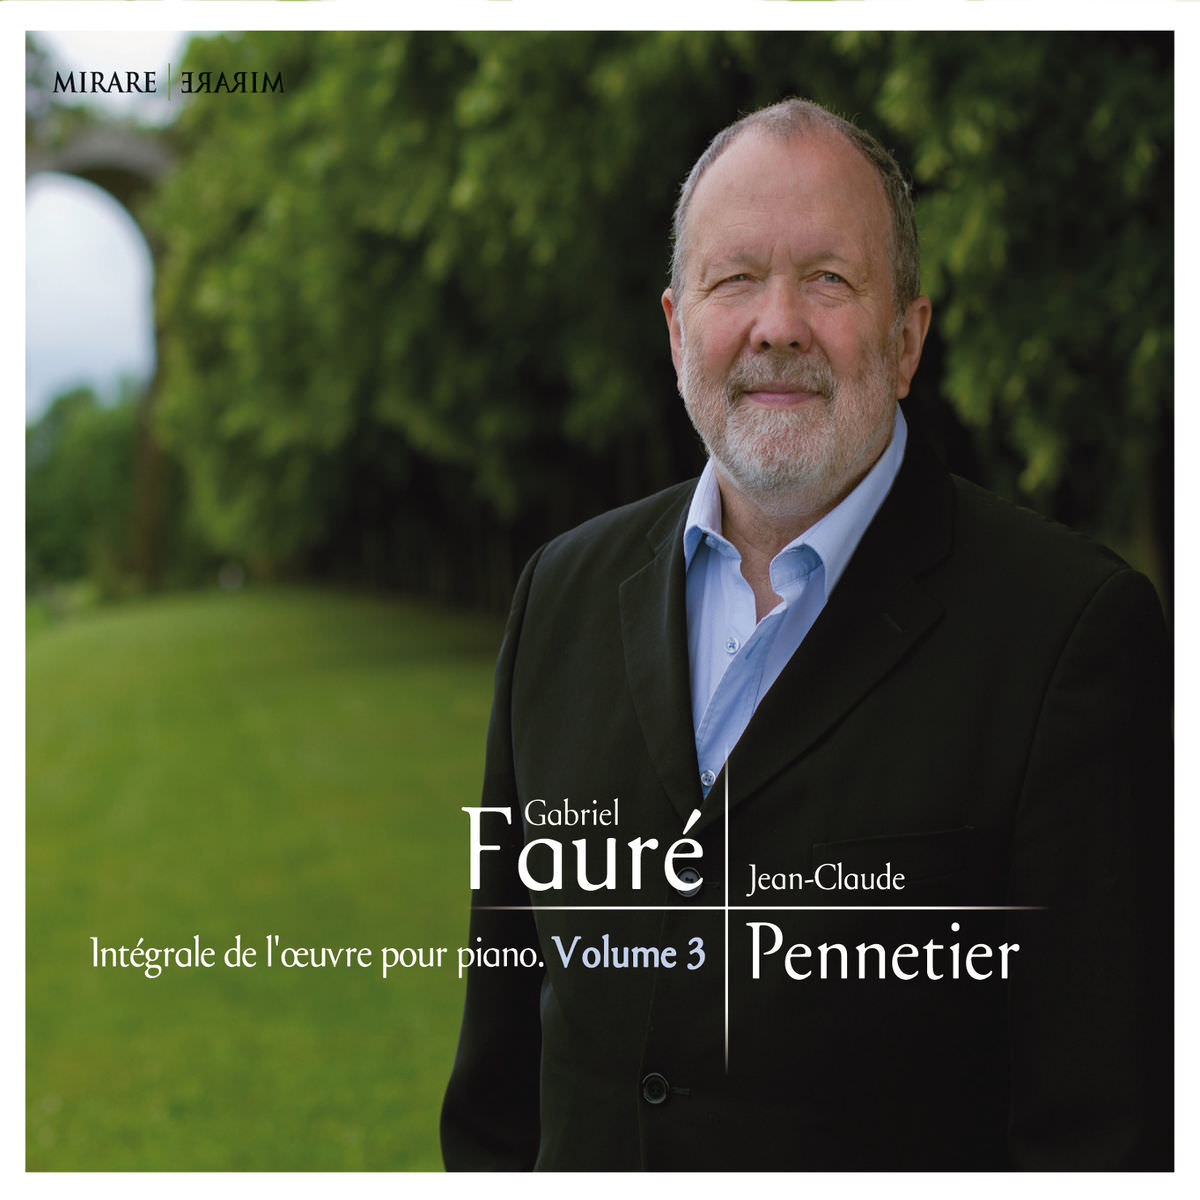 Jean-Claude Pennetier – Faure: Integrale de l’oeuvre pour piano, Vol 3 (2015) [FLAC 24bit/96kHz]